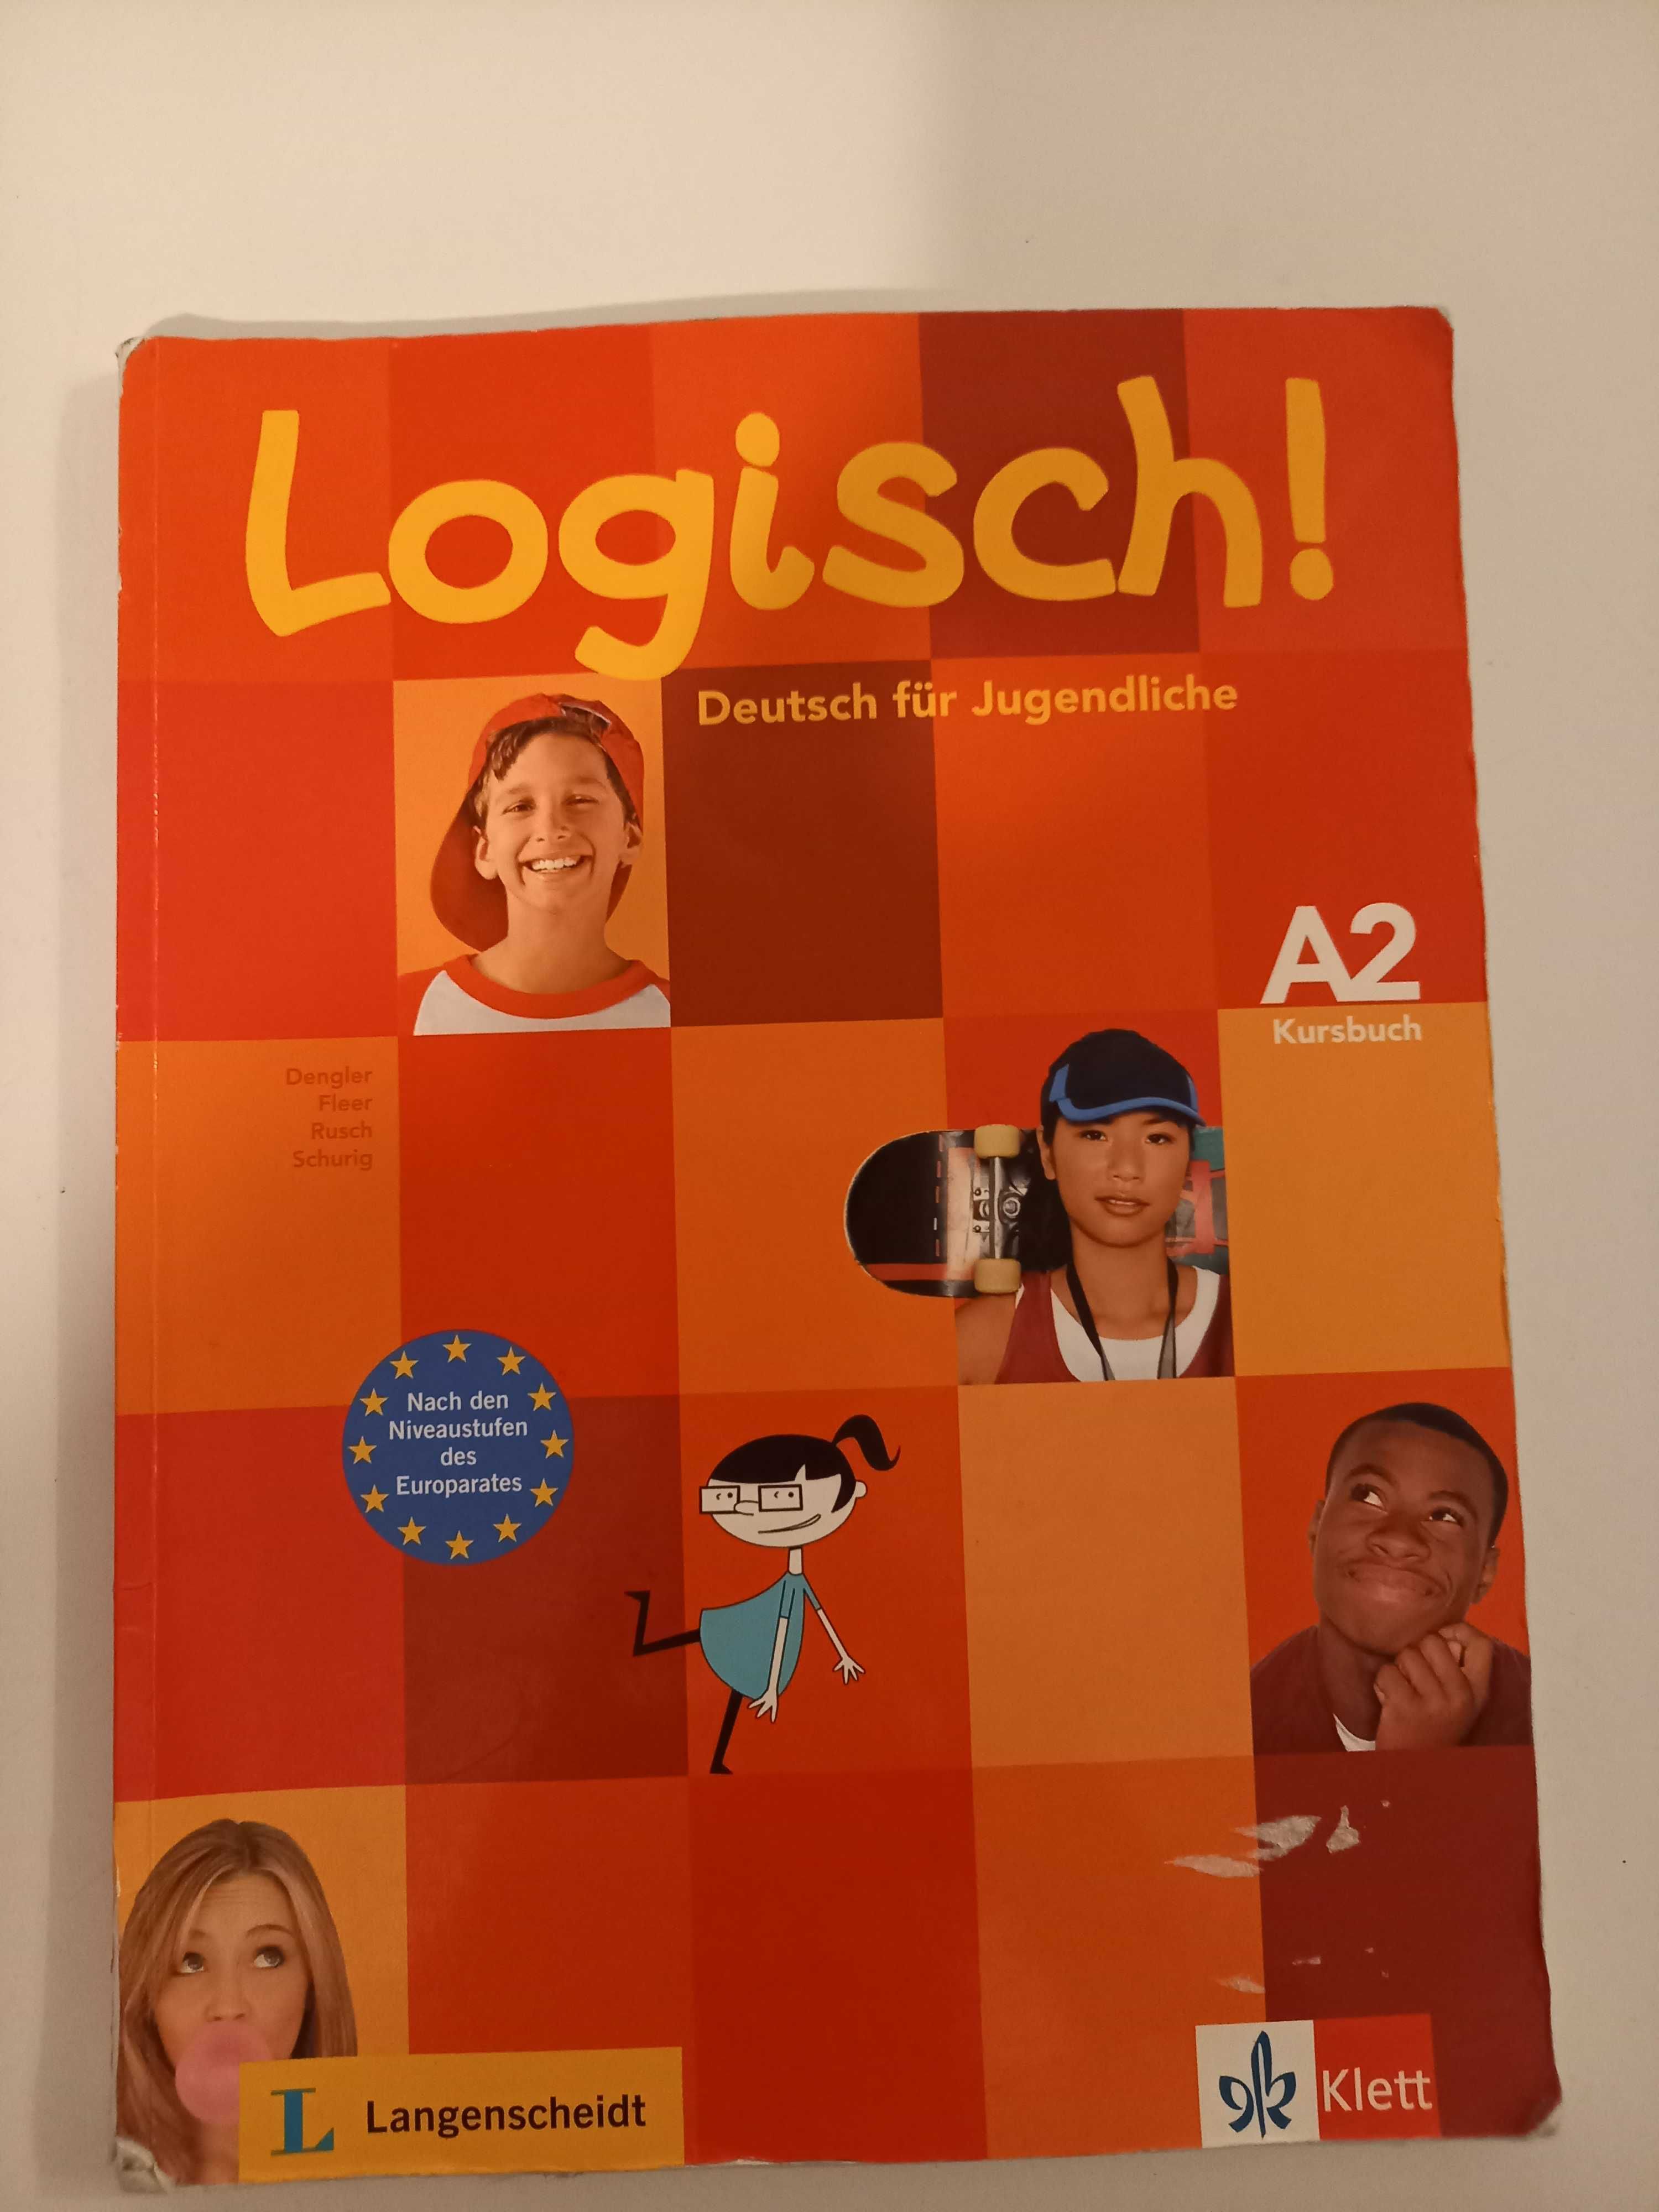 Logisch ! Manual Limba Germana nivel A2